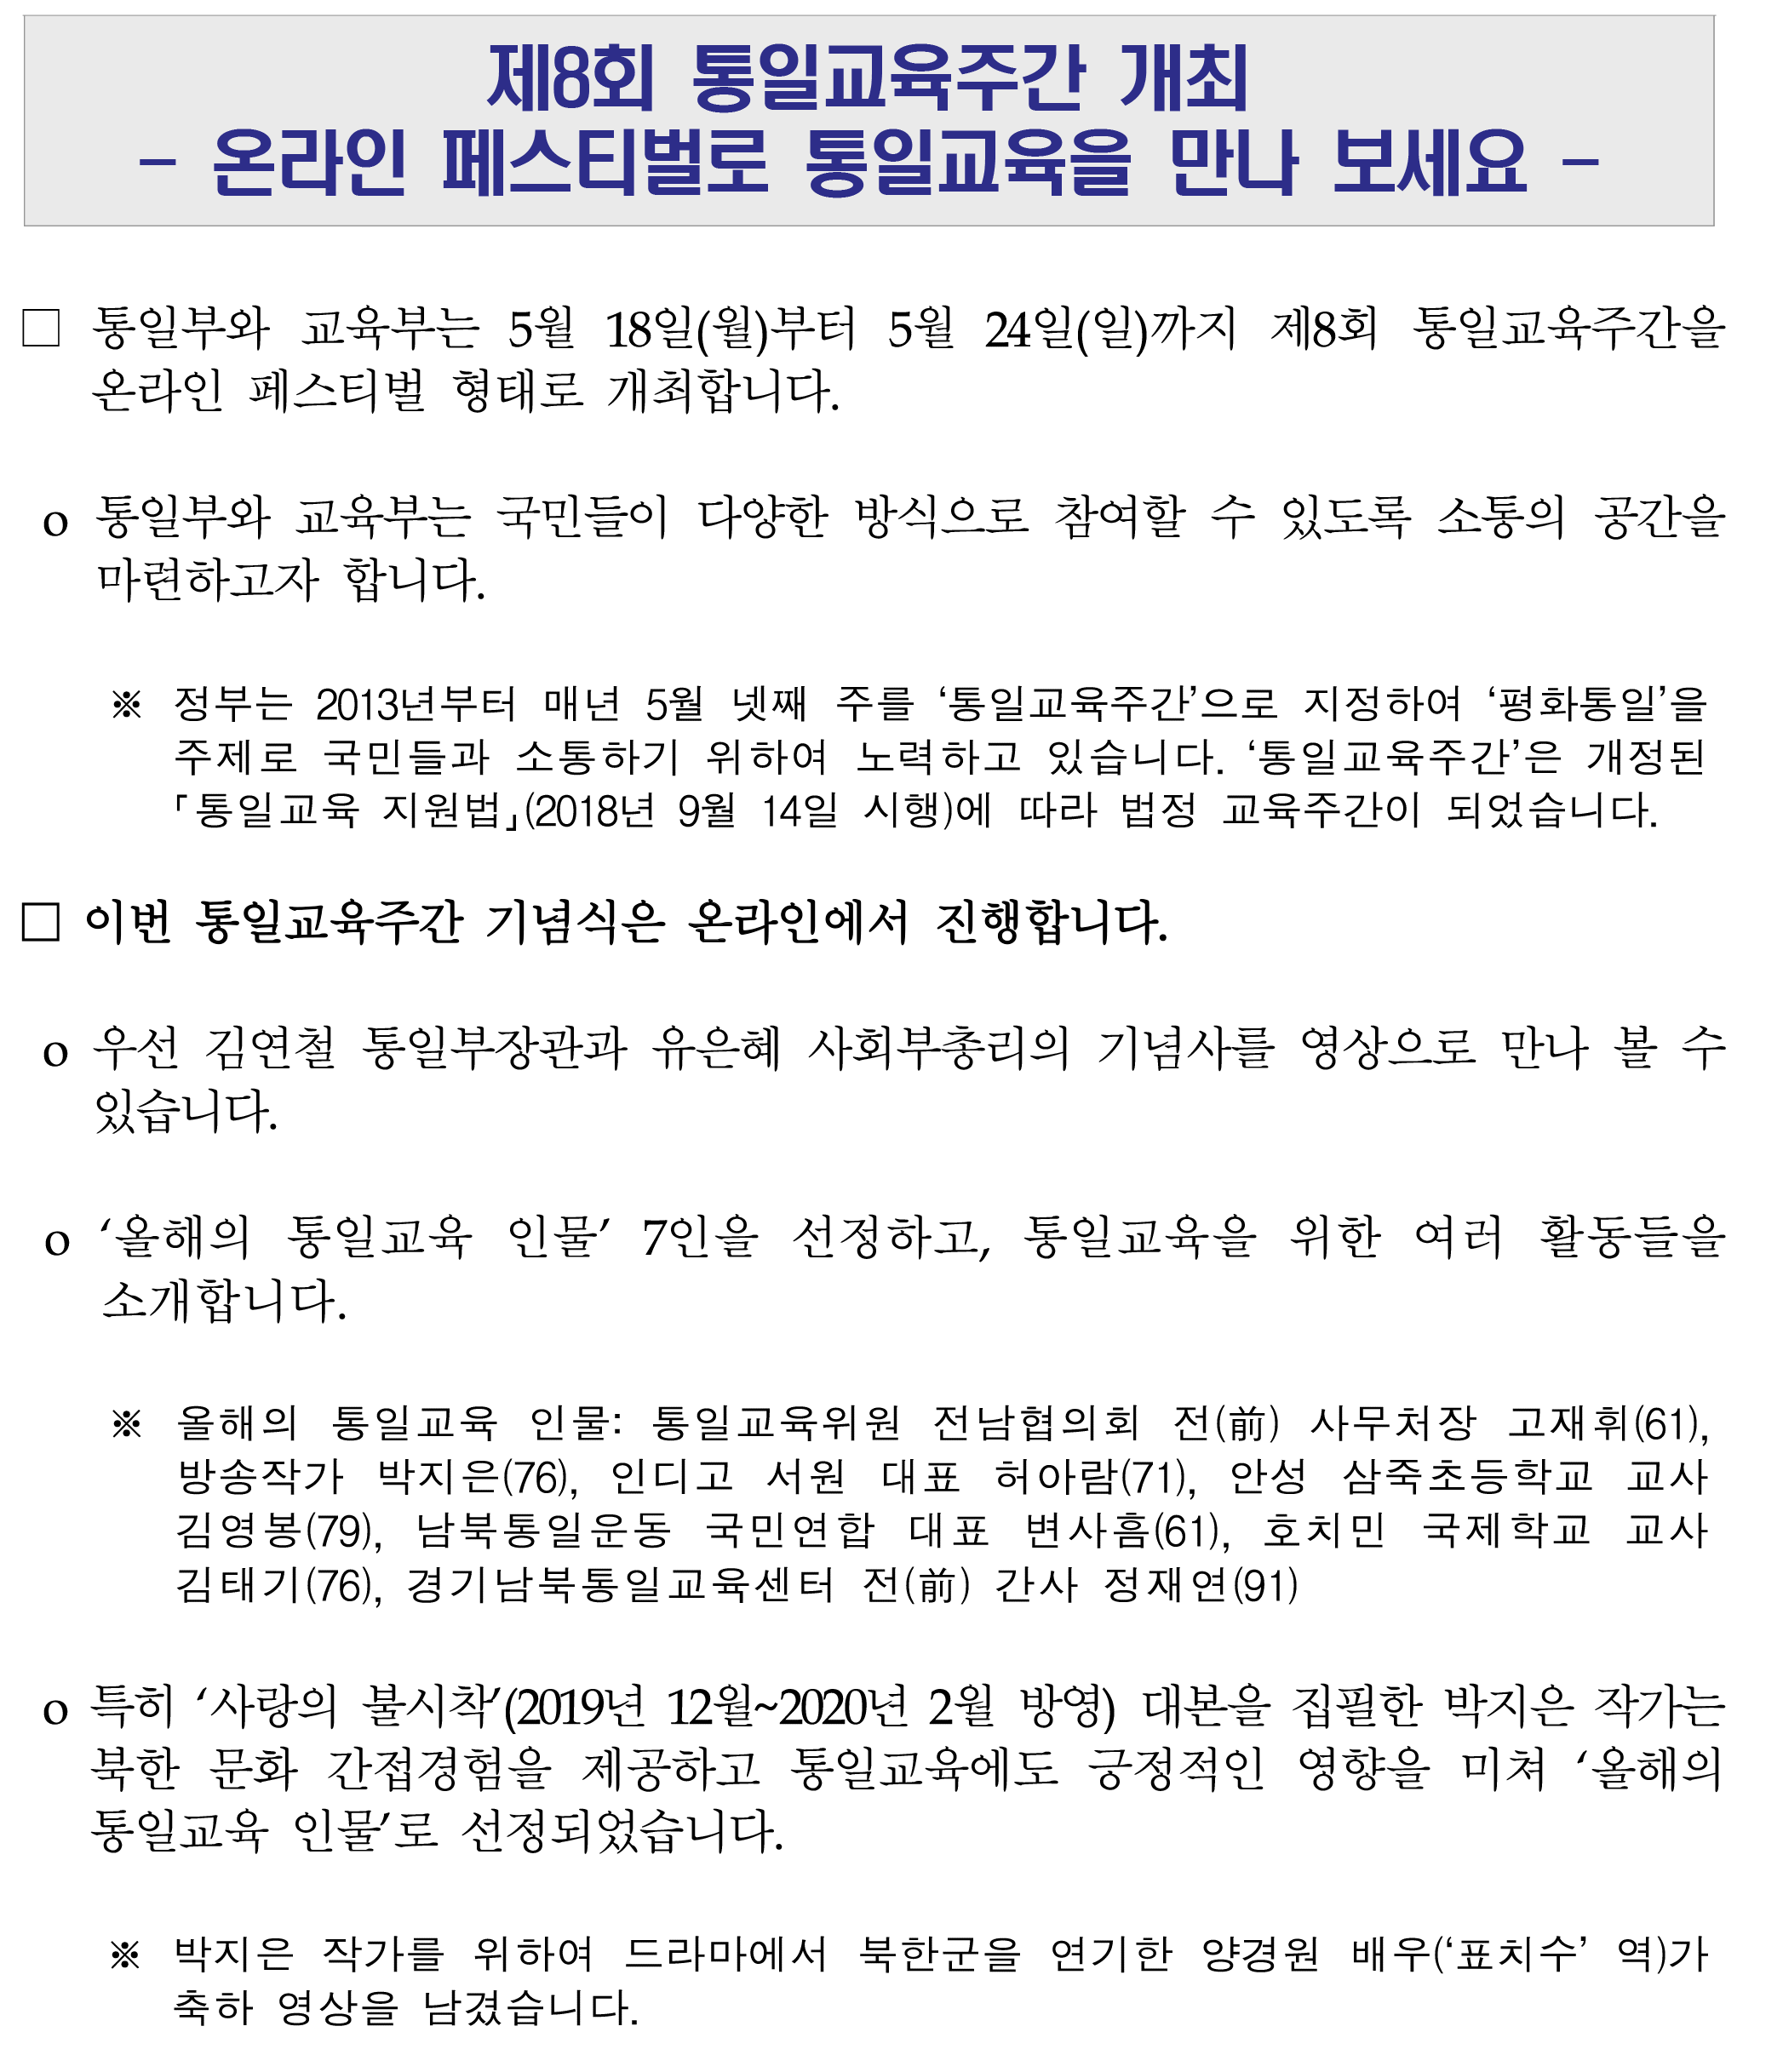 제8회 통일교육주간 개최